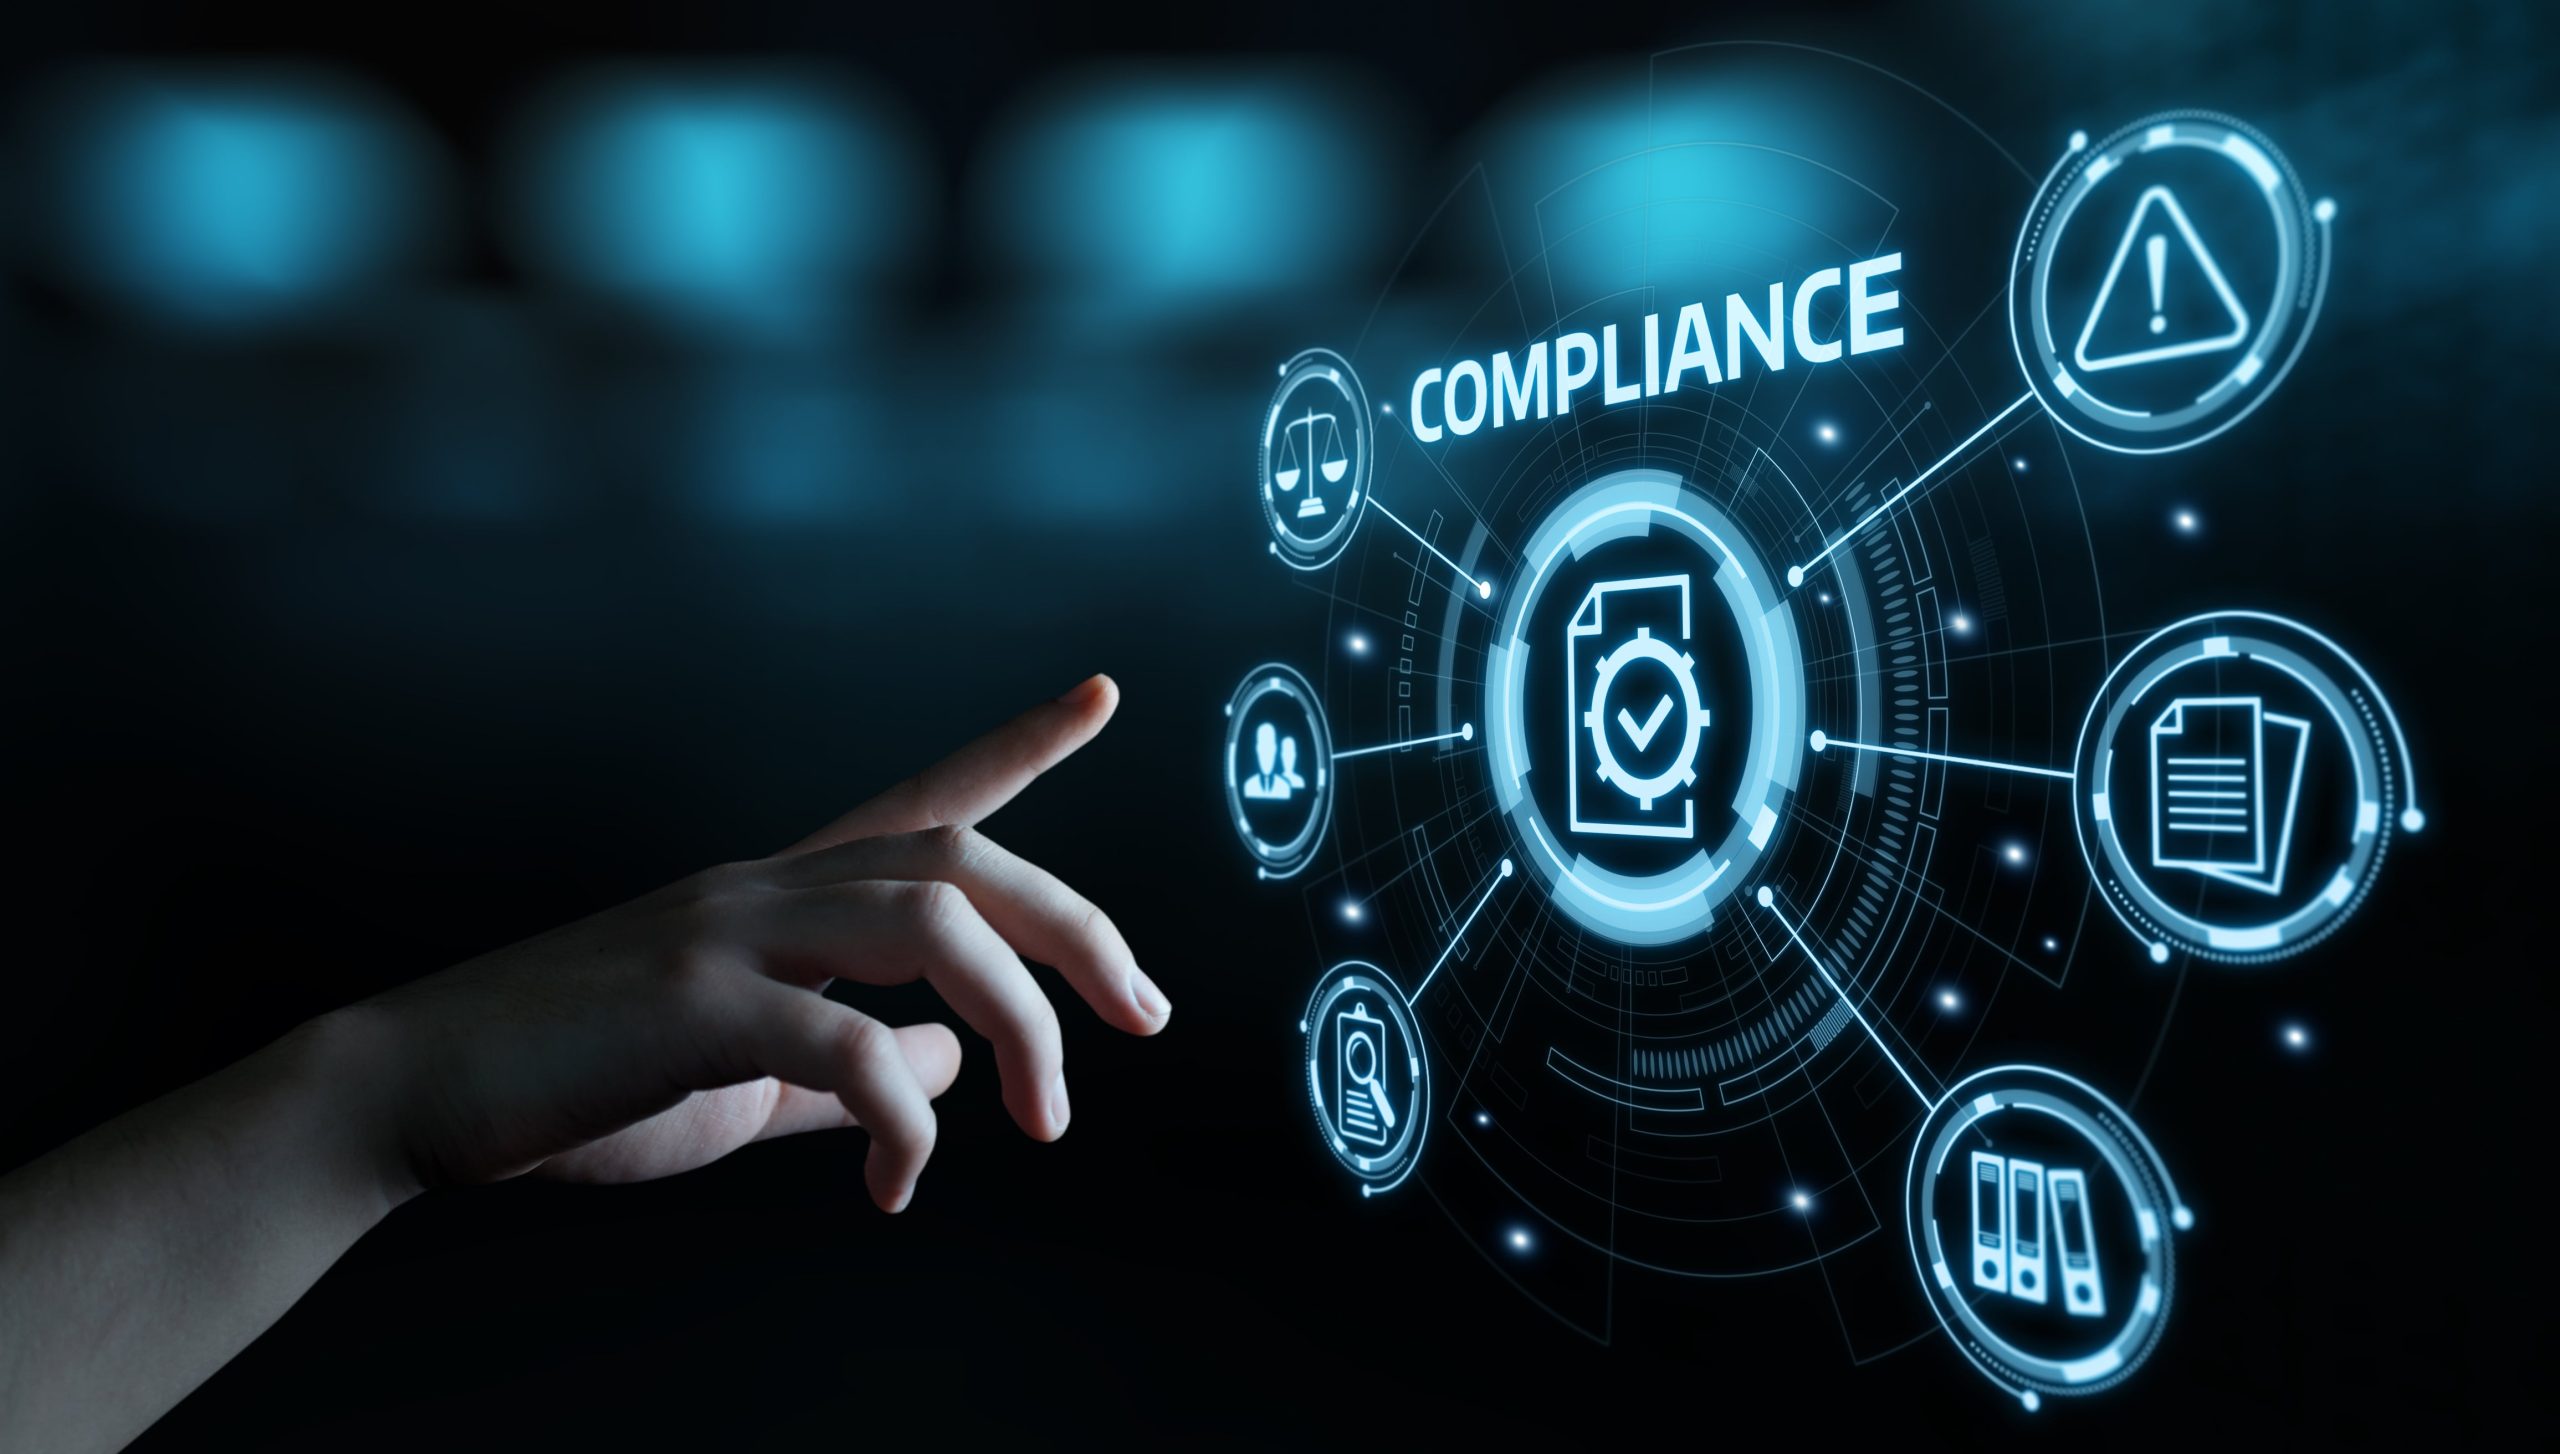 STIR/SHAKEN Compliance Management